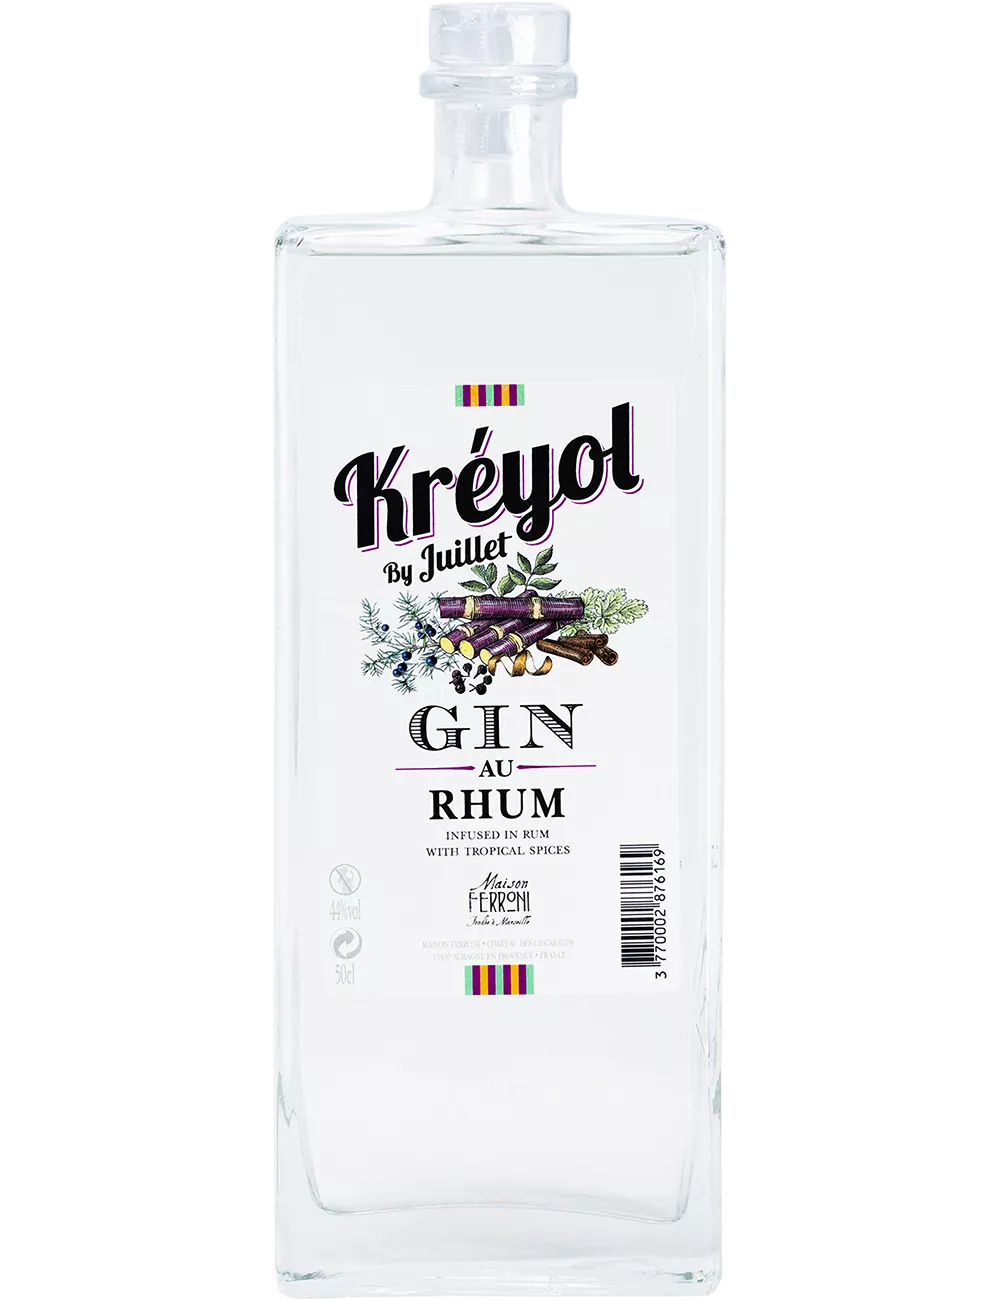 Juillet - Rhum Kréyol  - Distilled gin